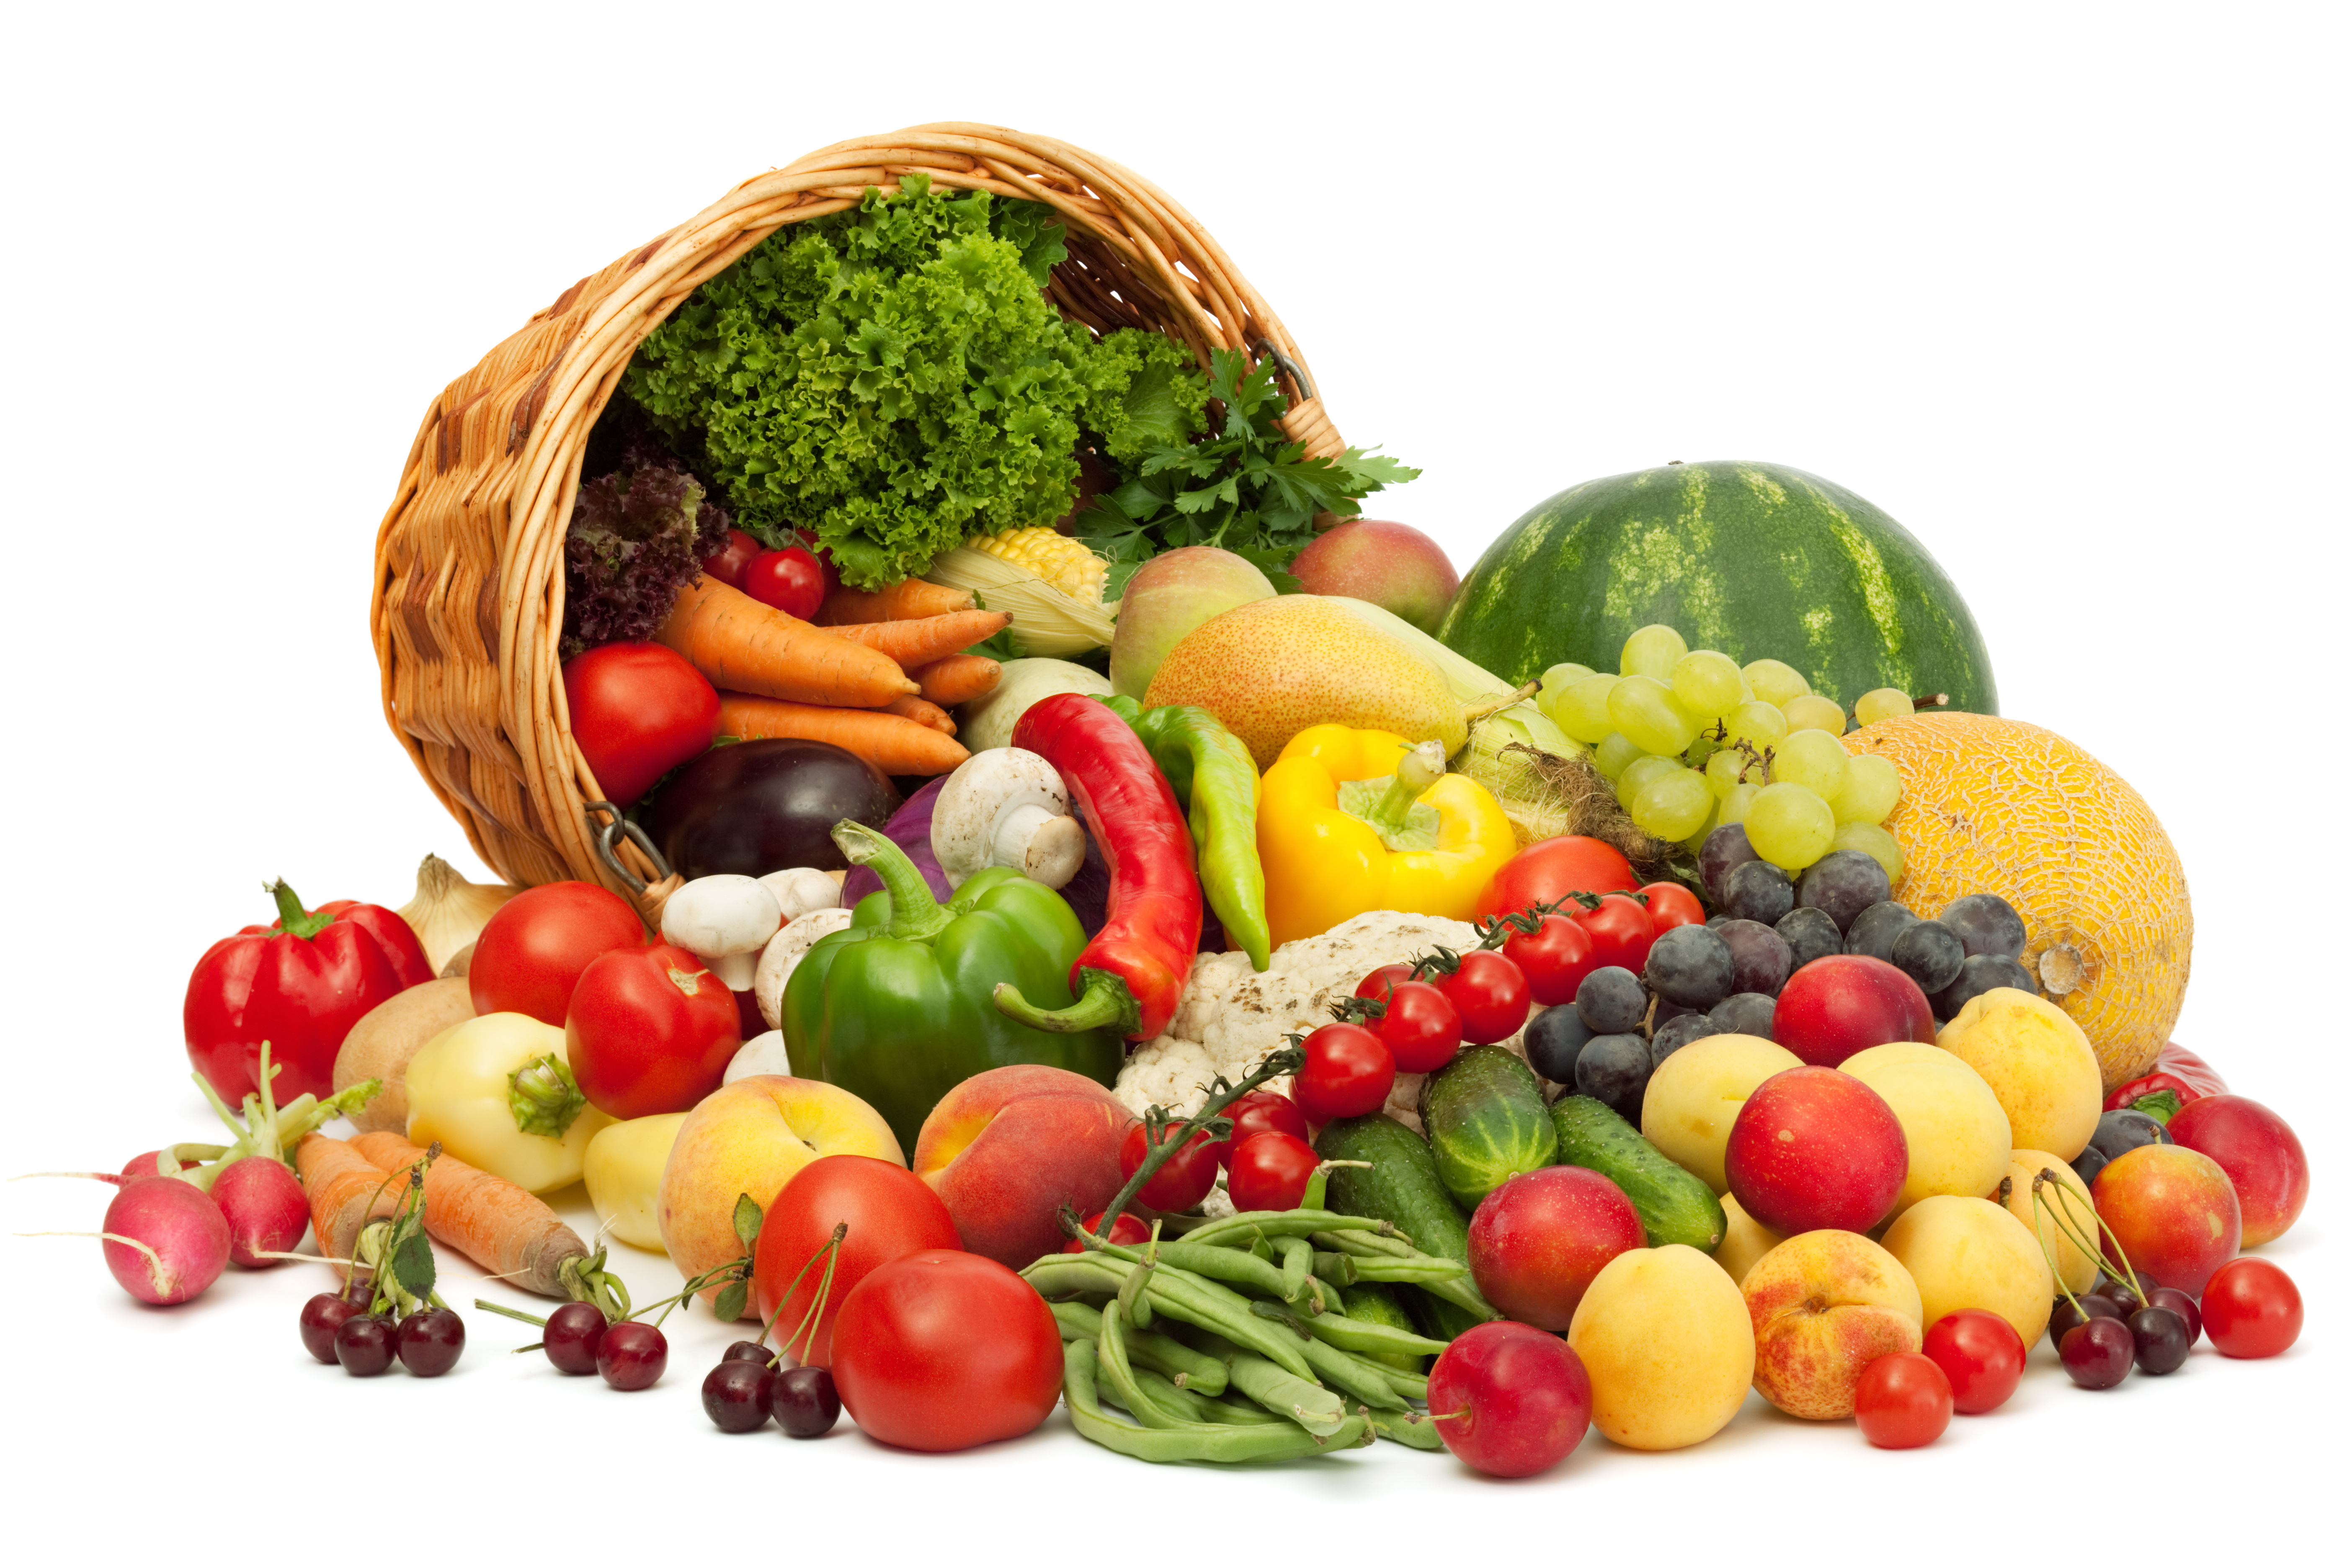 Vegetable products. Овощи и фрукты. Свежие овощи и фрукты. Овощи и ягоды. Корзина с овощами и фруктами.